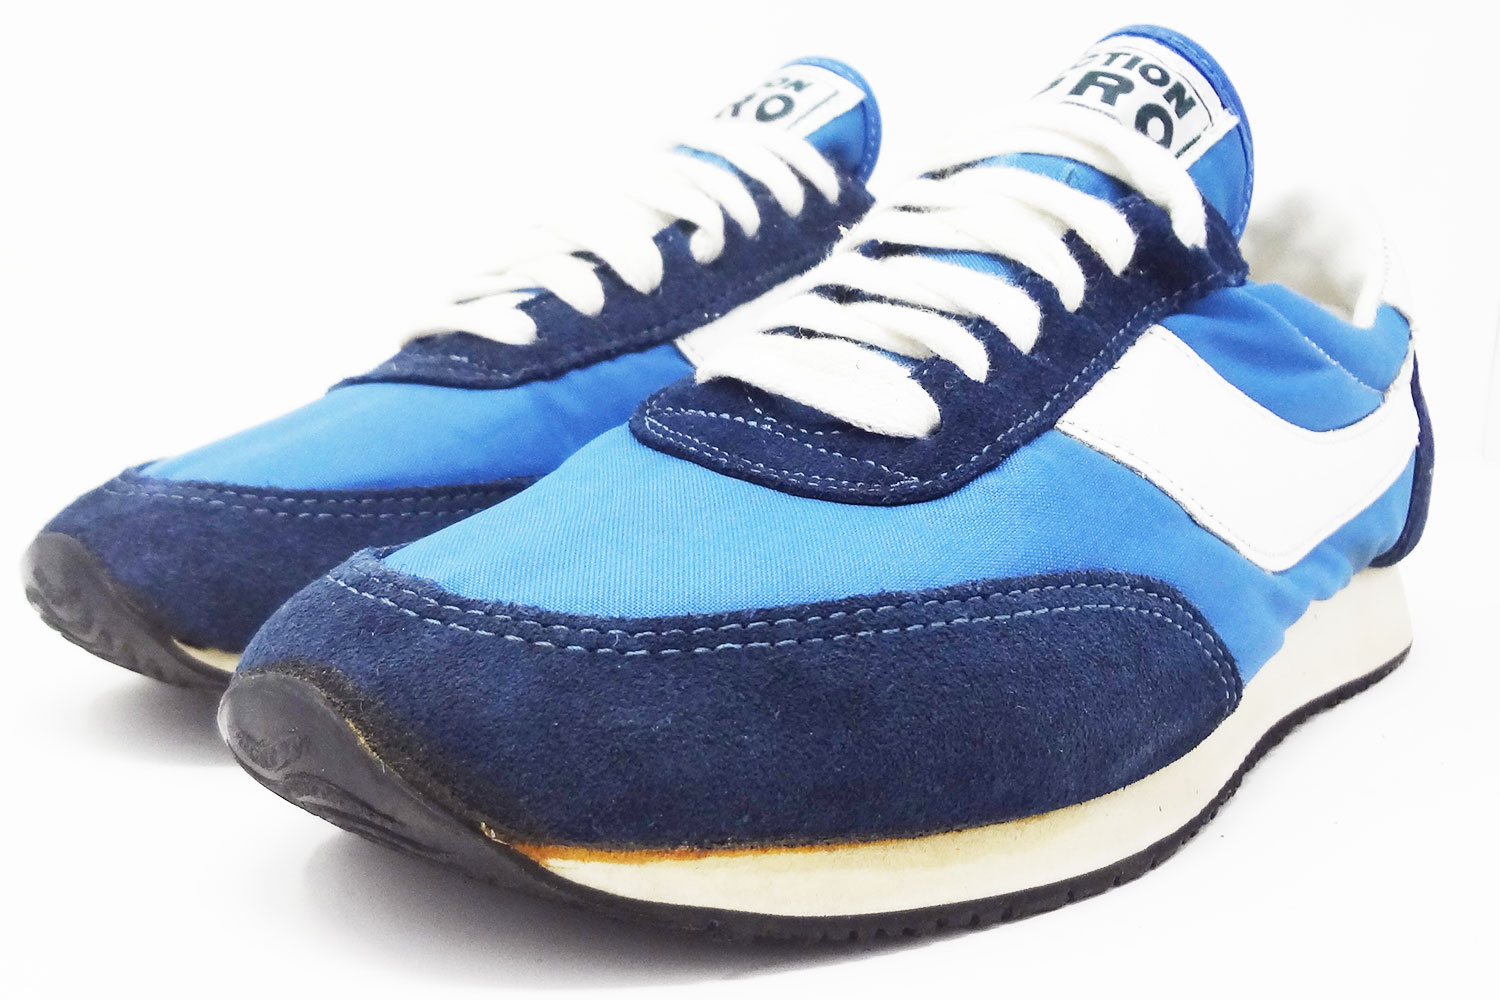 retro 80s sneakers